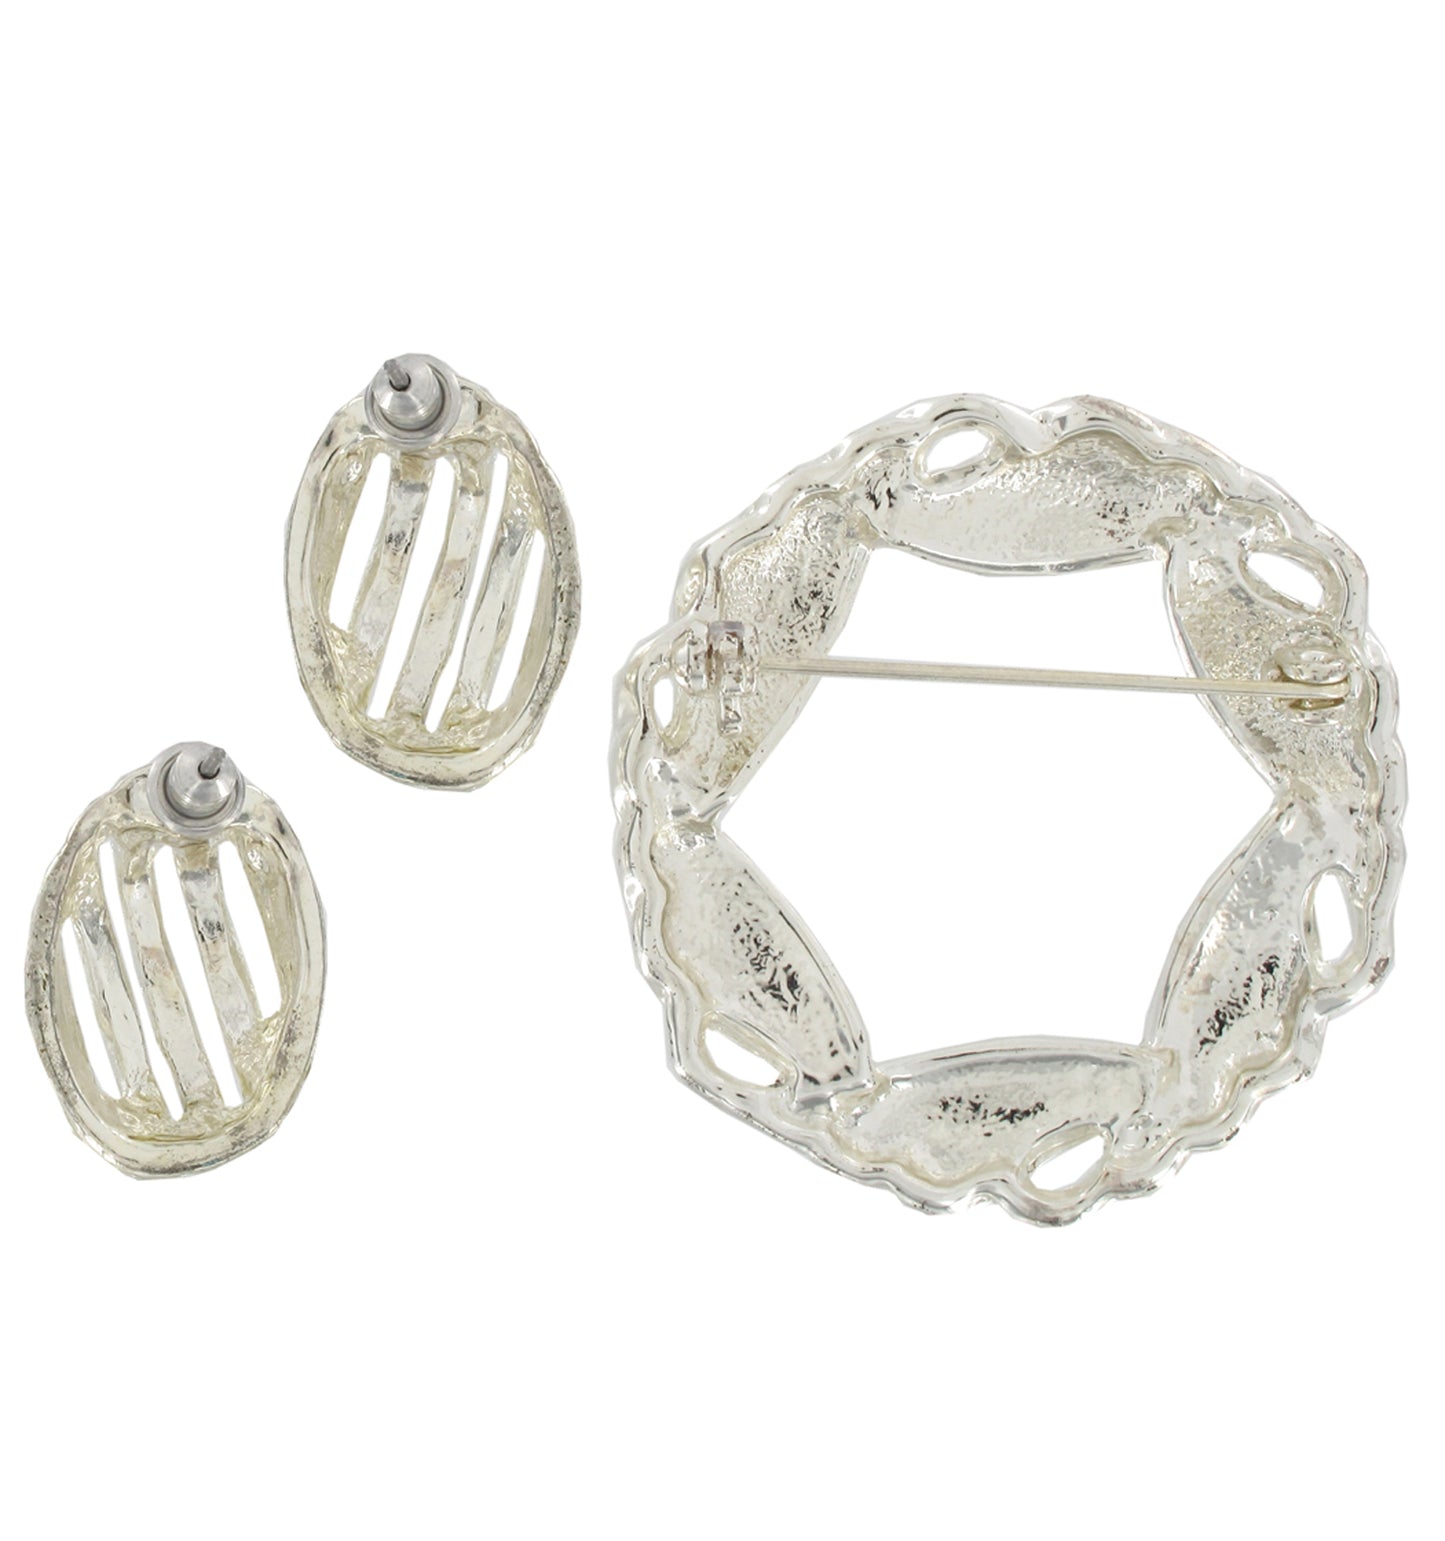 Silver Tone Wreath Brooch Pin 1 3/4" Oval Stud Pierced Earrings 7/8" Jewelry Set